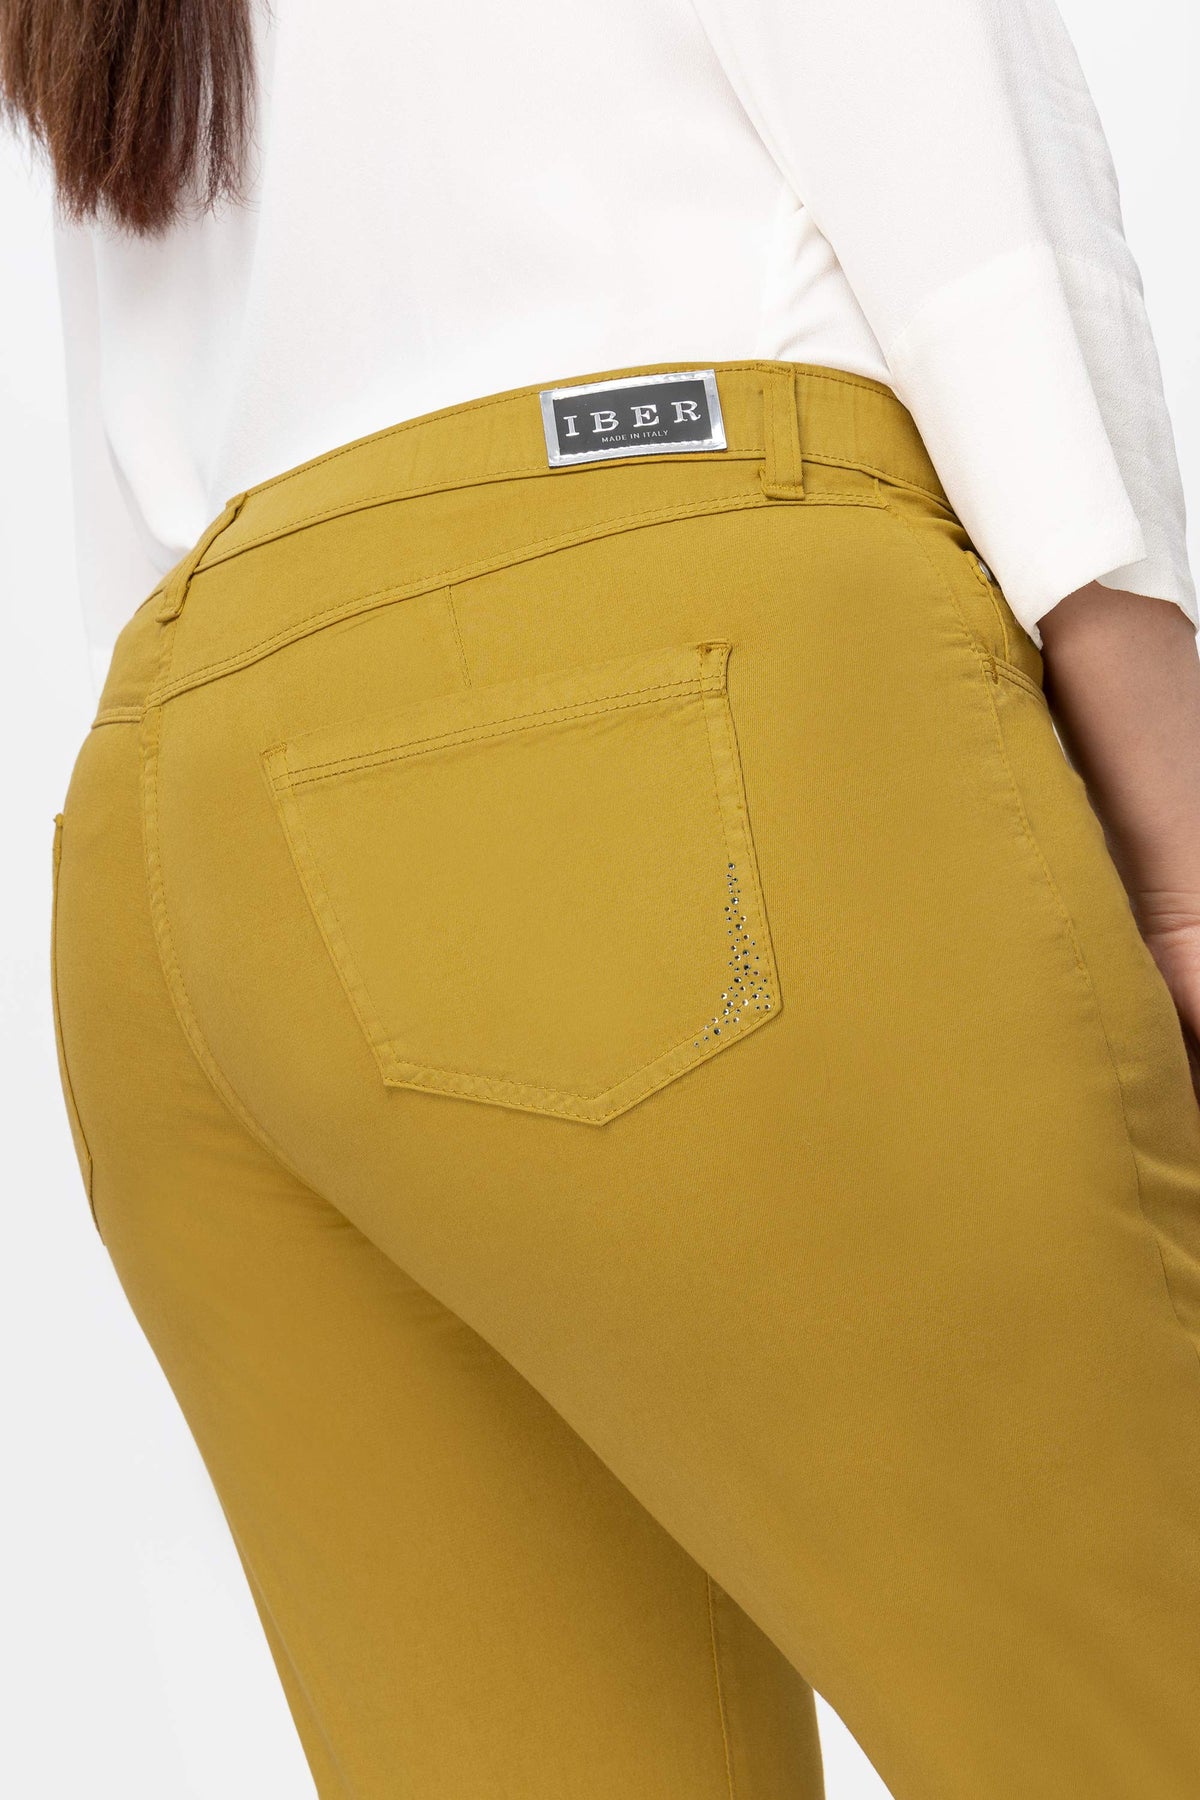 Demetra Th/S Pantalone cotone con dettaglio strass